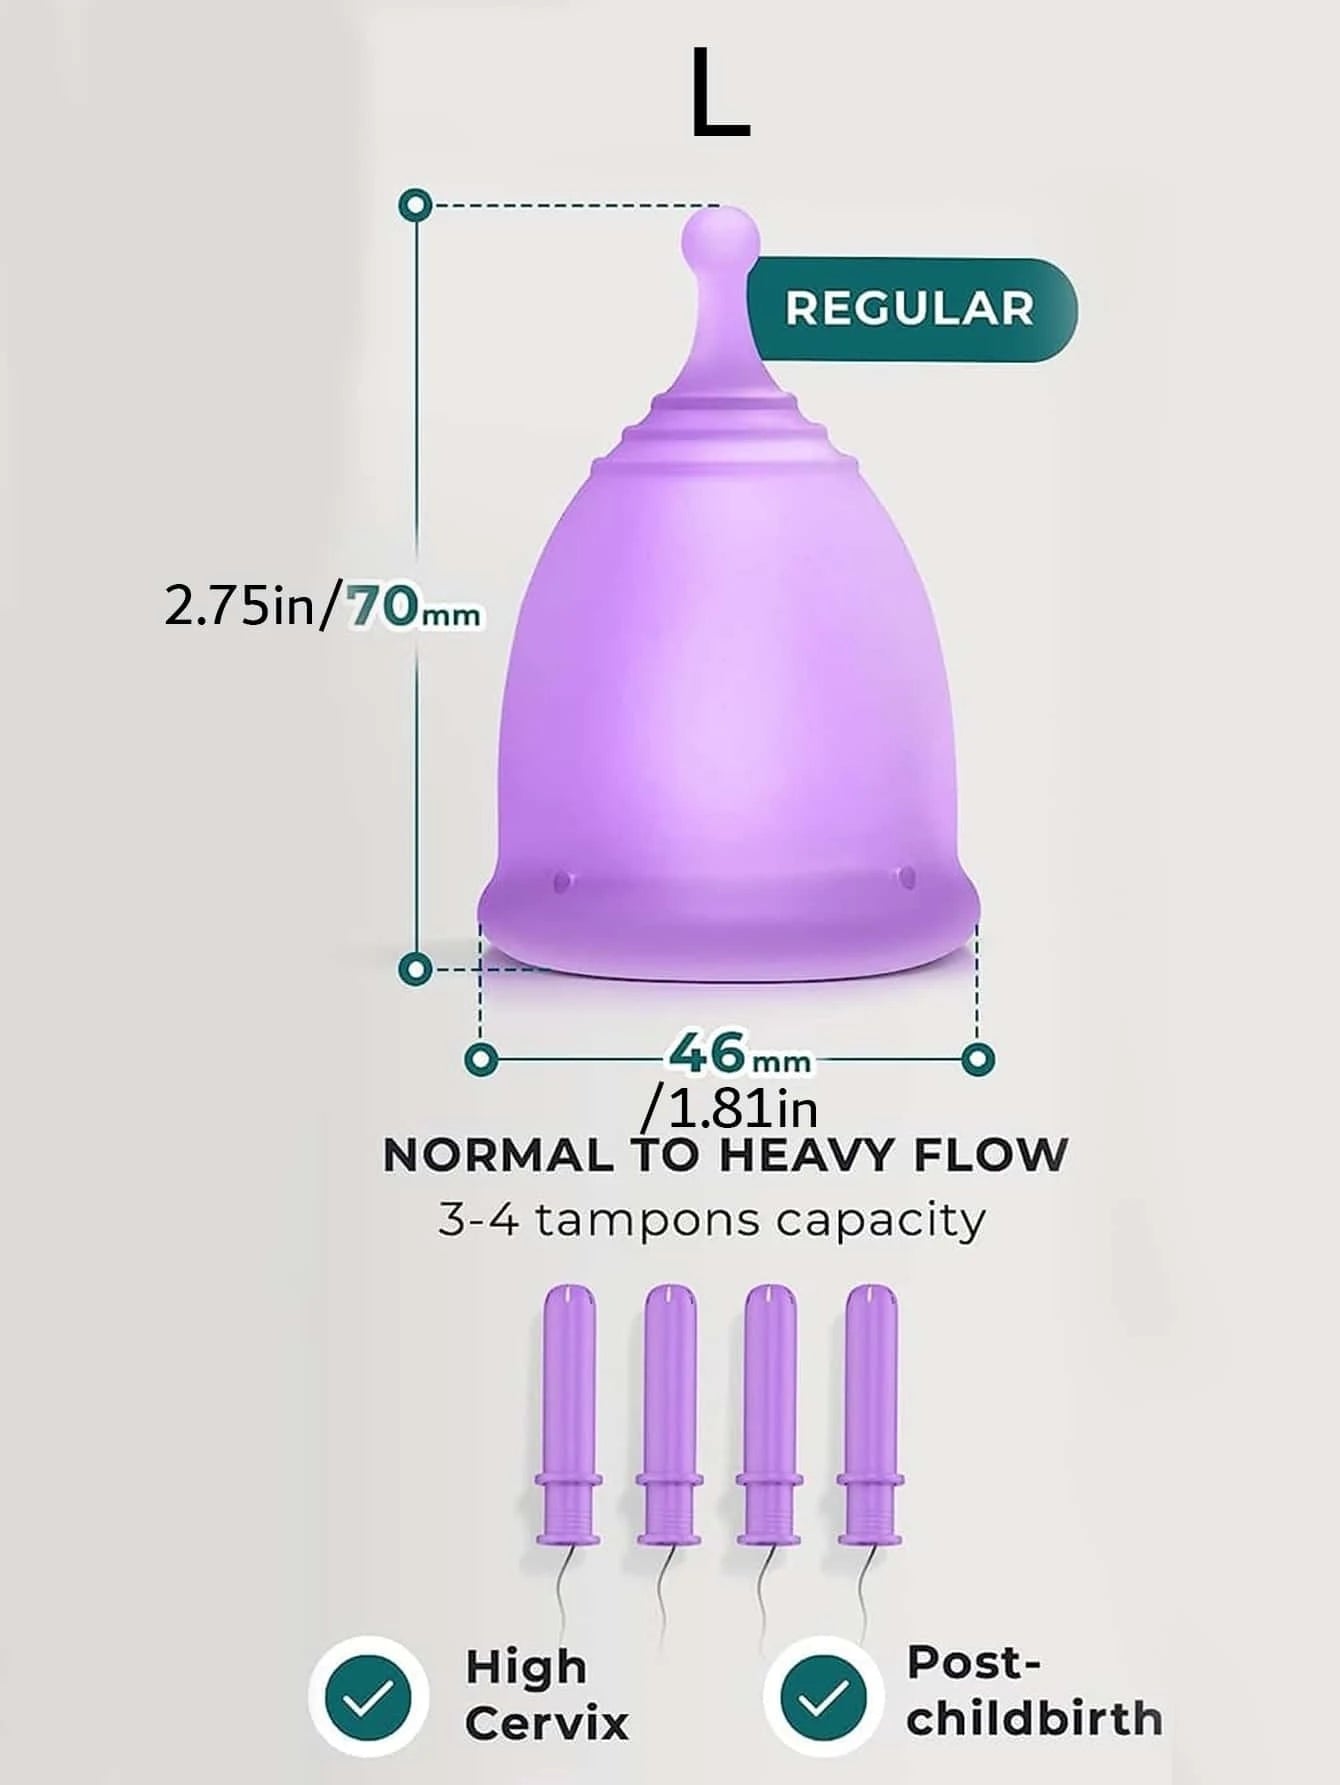 4737 a08-09 Una Pieza Copa Menstrual Reutilizable De Silicona De 12 Horas En Color Púrpura Para La Protección Del Período De La Mujer